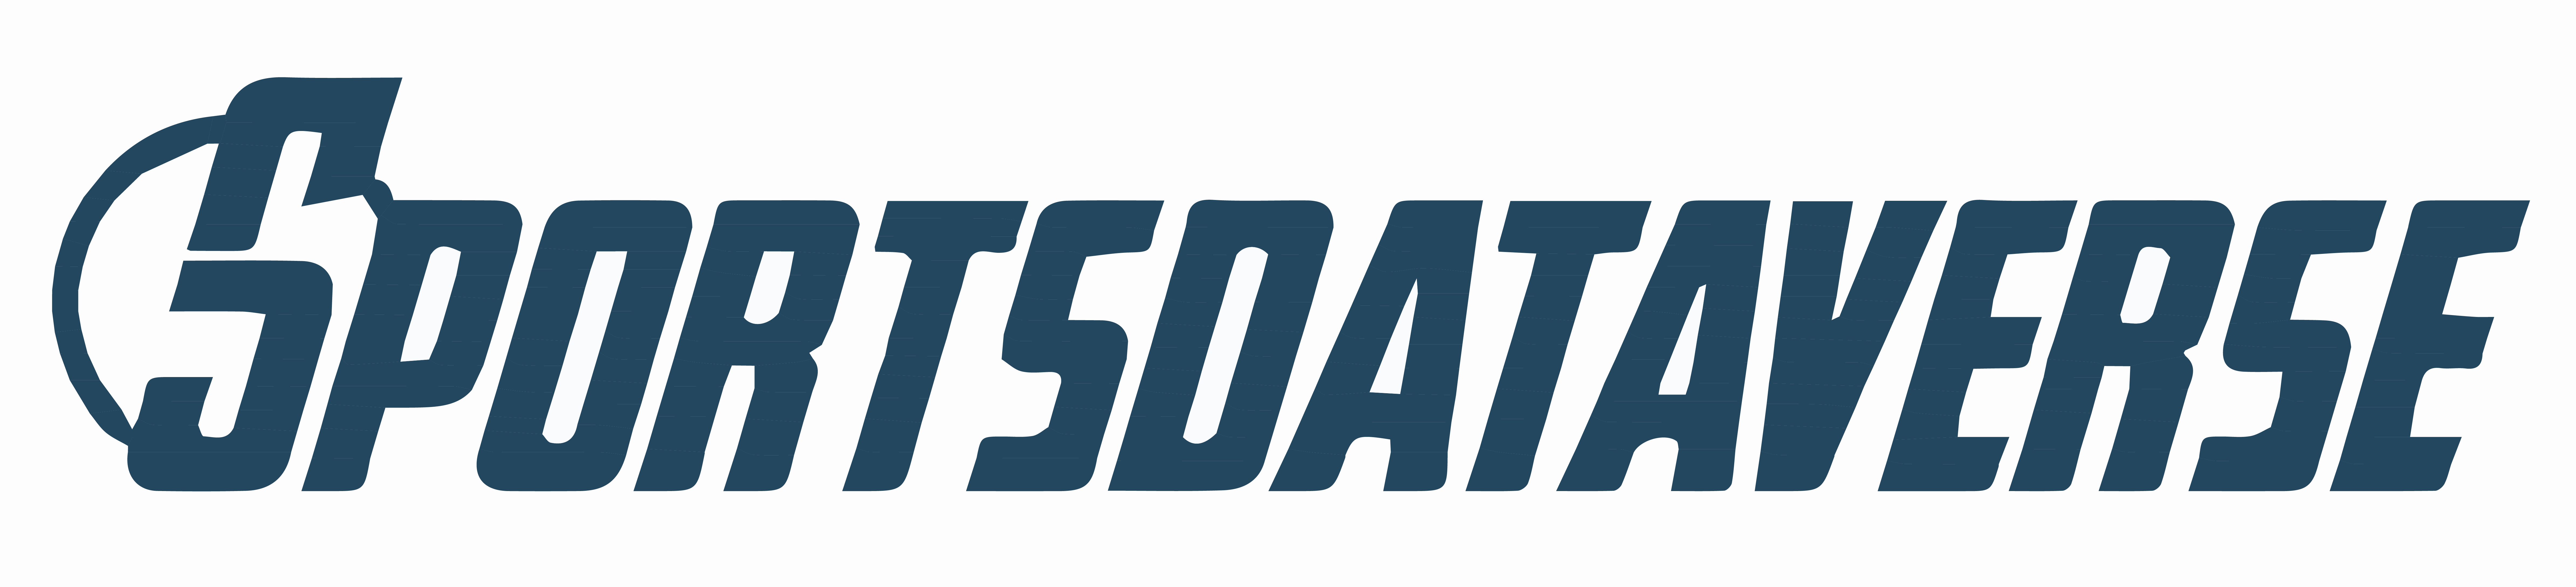 SportsDataverse logo